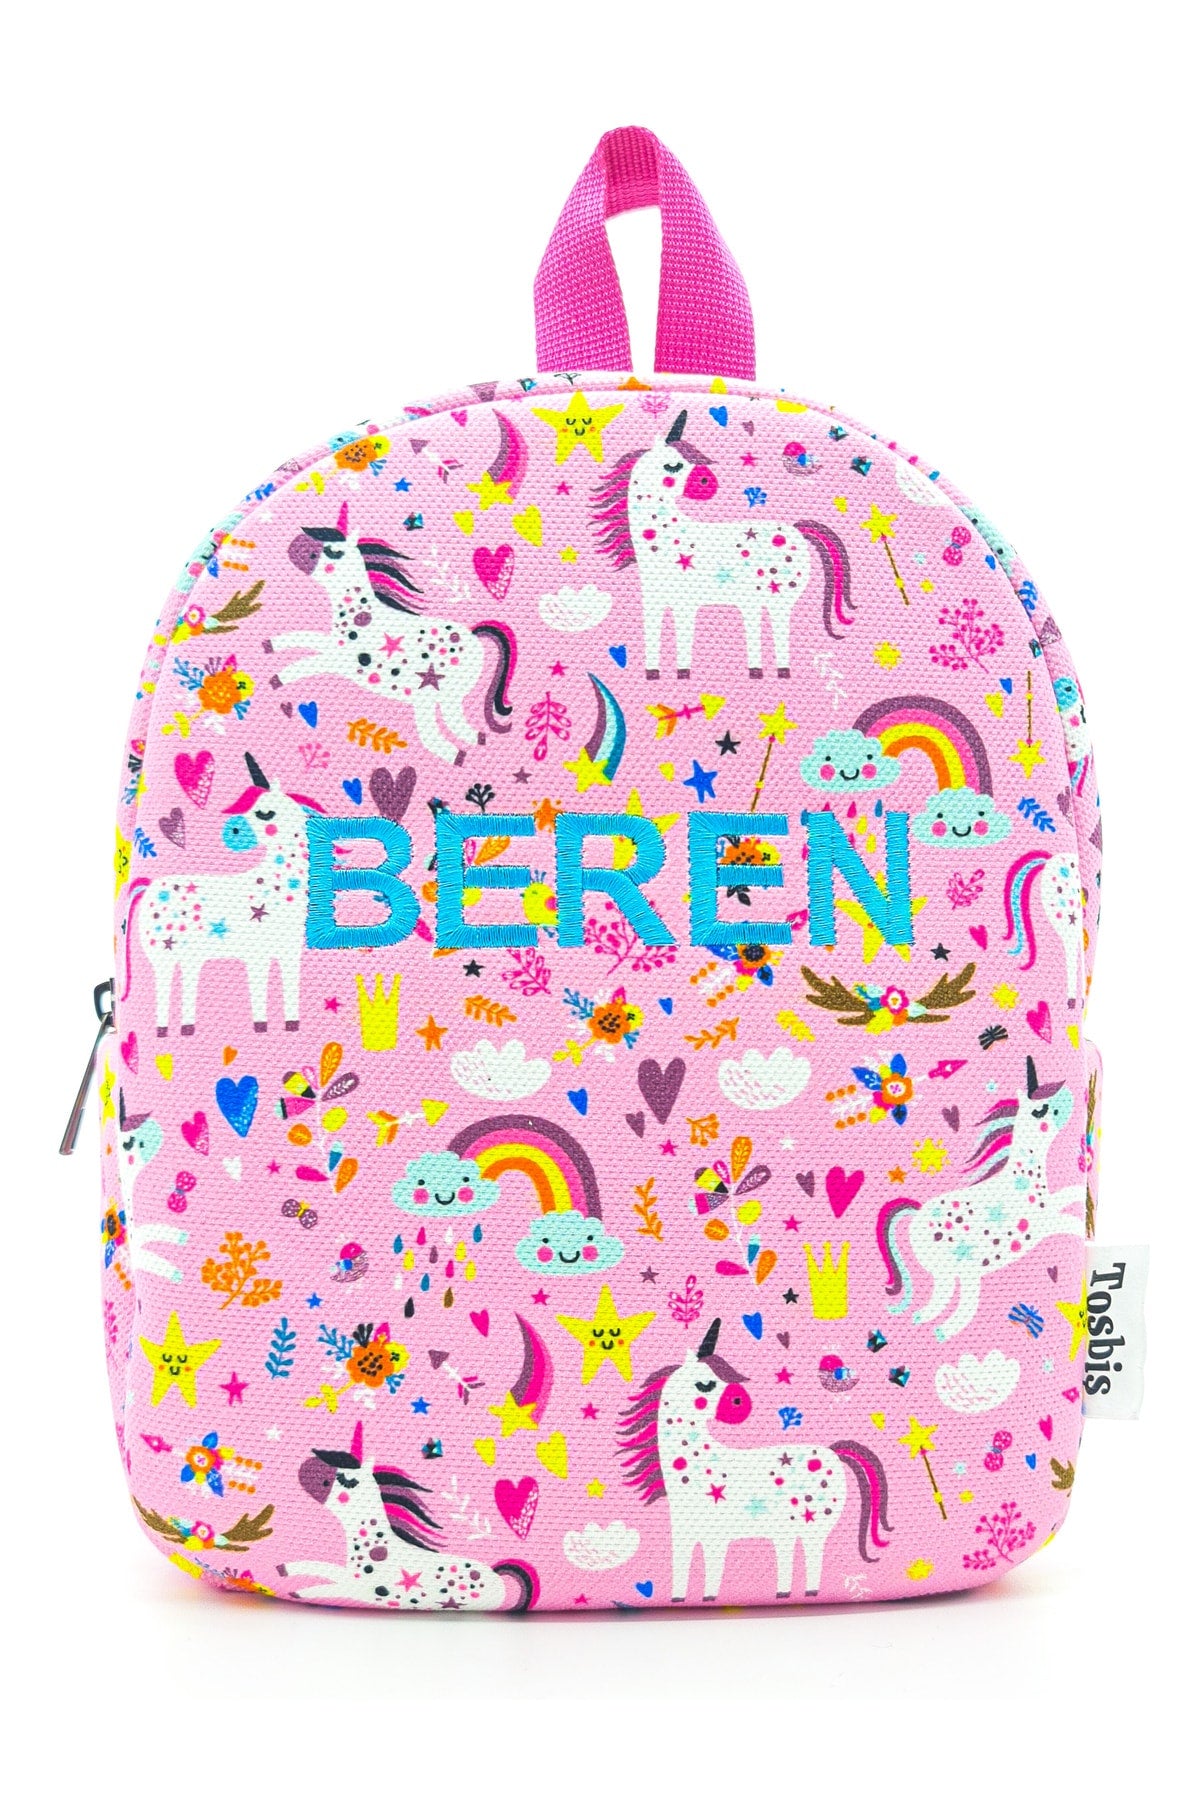 We Write Any Name You Want ] Sweet Unicorn 0-8 Years Old Kids Backpack, Kindergarten-Nursery Backpack